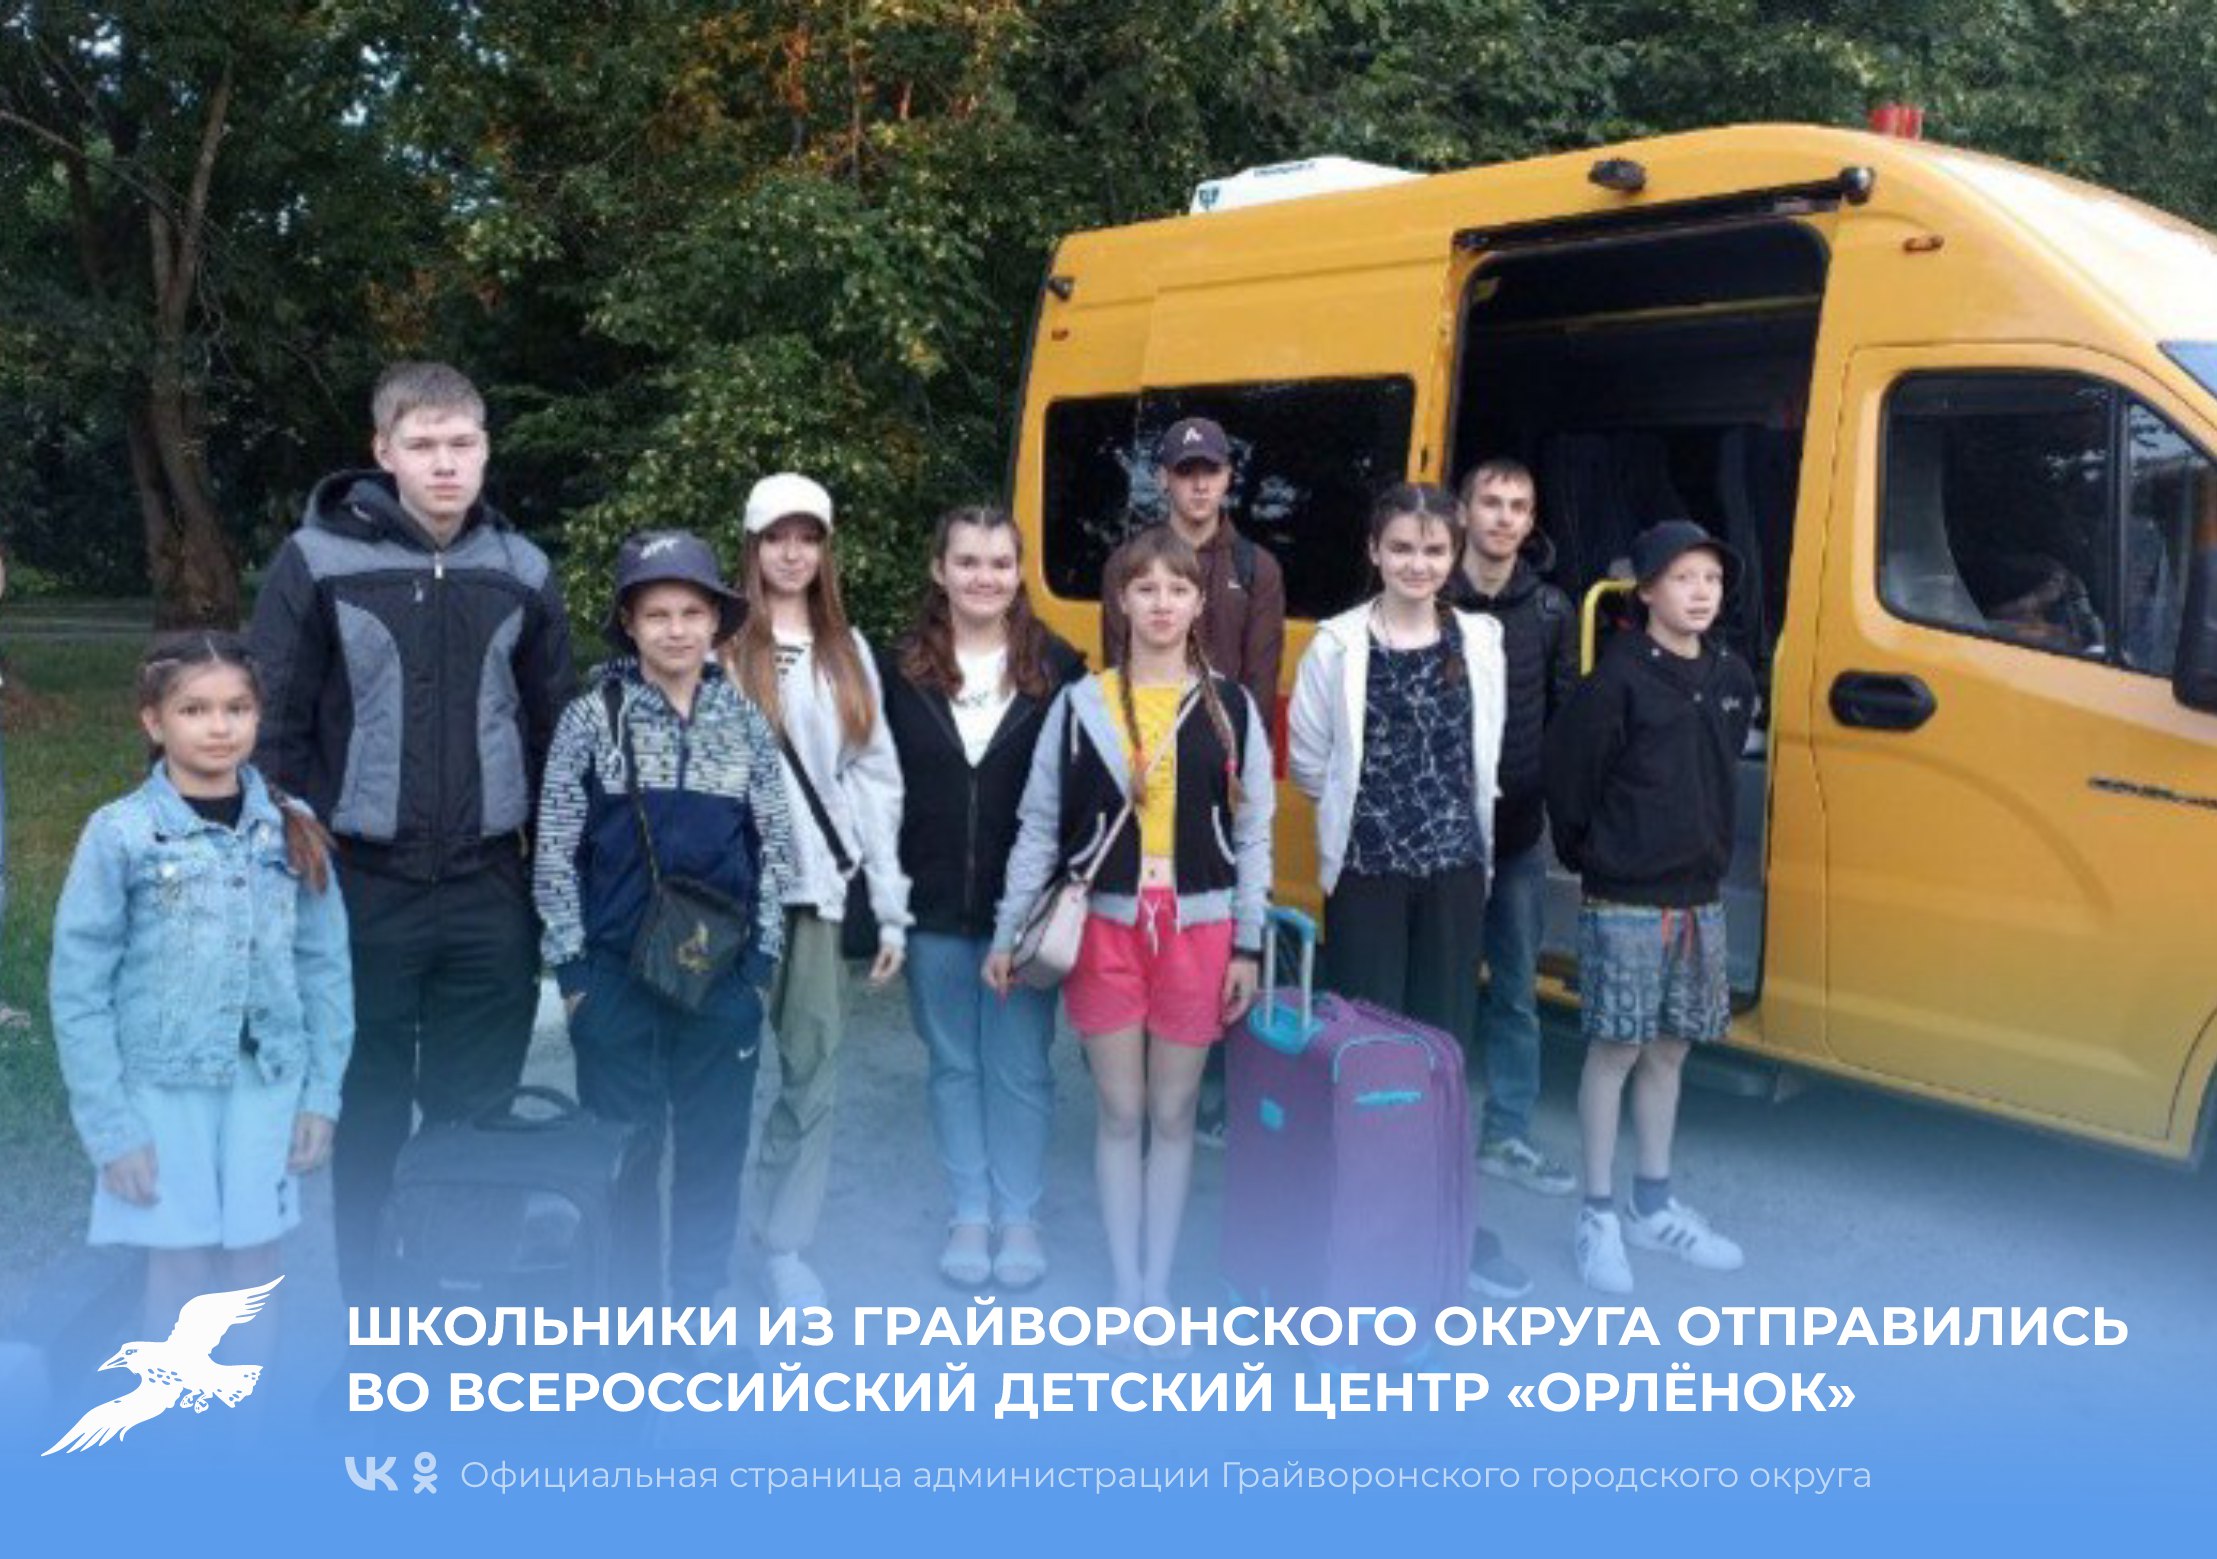 Школьники из Грайворонского округа отправились во Всероссийский детский центр «Орлёнок».